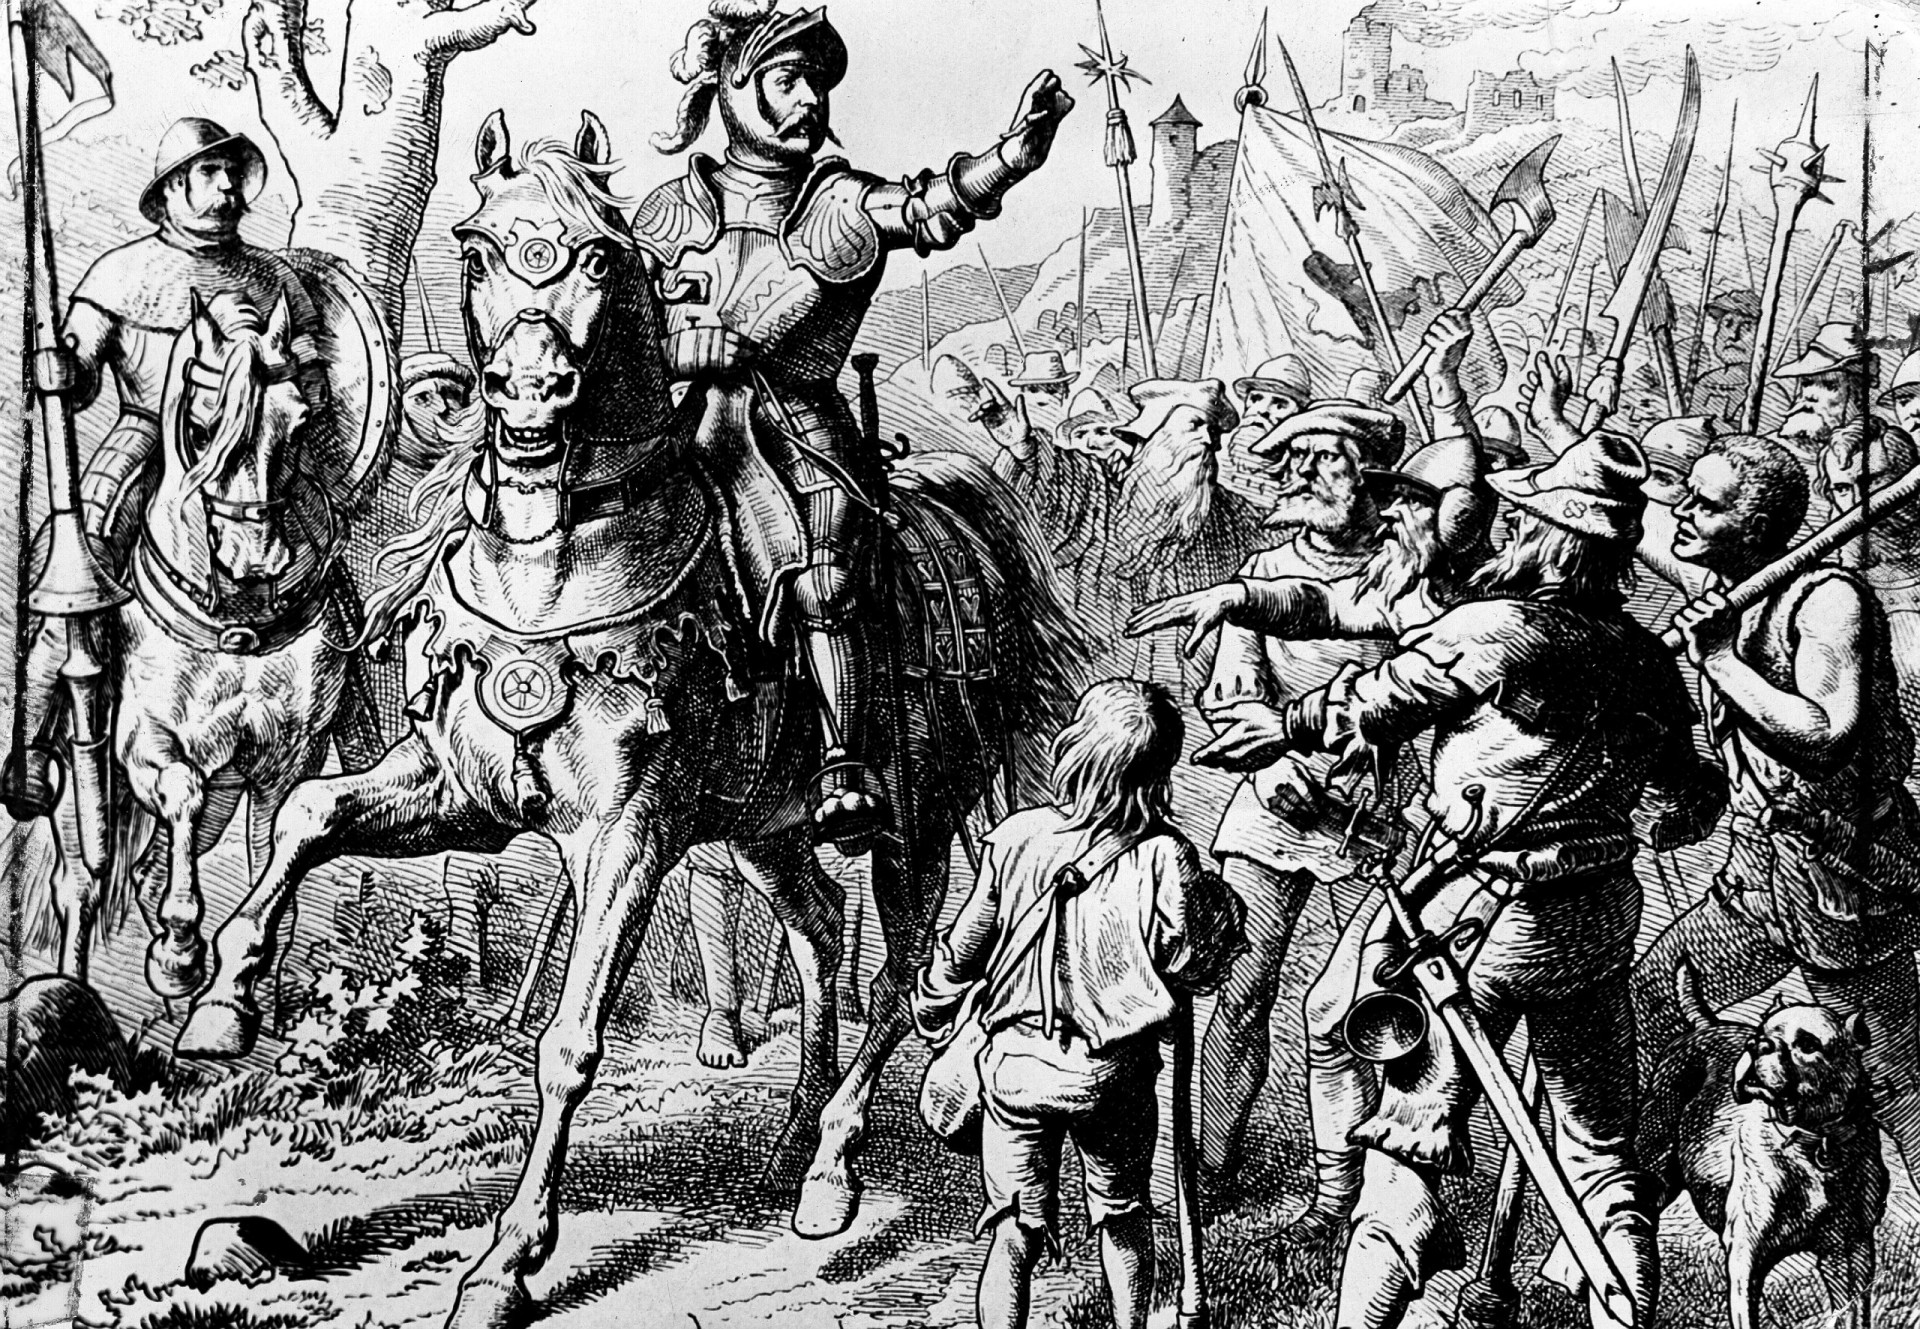 <p>Götz von Berlichingen tuvo una larga carrera como militar. ¡Luchó en campañas durante 47 años!</p><p>Fuentes: (<a href="https://workingtheflame.com/famous-knights/" rel="noopener">Working the Flame</a>) (<a href="https://www.worldhistory.org/article/1245/medieval-knights-12-of-the-best/" rel="noopener">World History Encyclopedia</a>) (<a href="https://www.thecollector.com/8-greatest-toughest-medieval-knights/" rel="noopener">TheCollector</a>) (<a href="https://www.historyhit.com/famous-medieval-knights/" rel="noopener">History Hit</a>)</p><p>Ver también: <a href="https://www.starsinsider.com/es/estilo-de-vida/448849/hechos-tan-repugnantes-como-cautivadores-sobre-la-edad-media">Hechos tan repugnantes como cautivadores sobre la Edad Media</a></p>